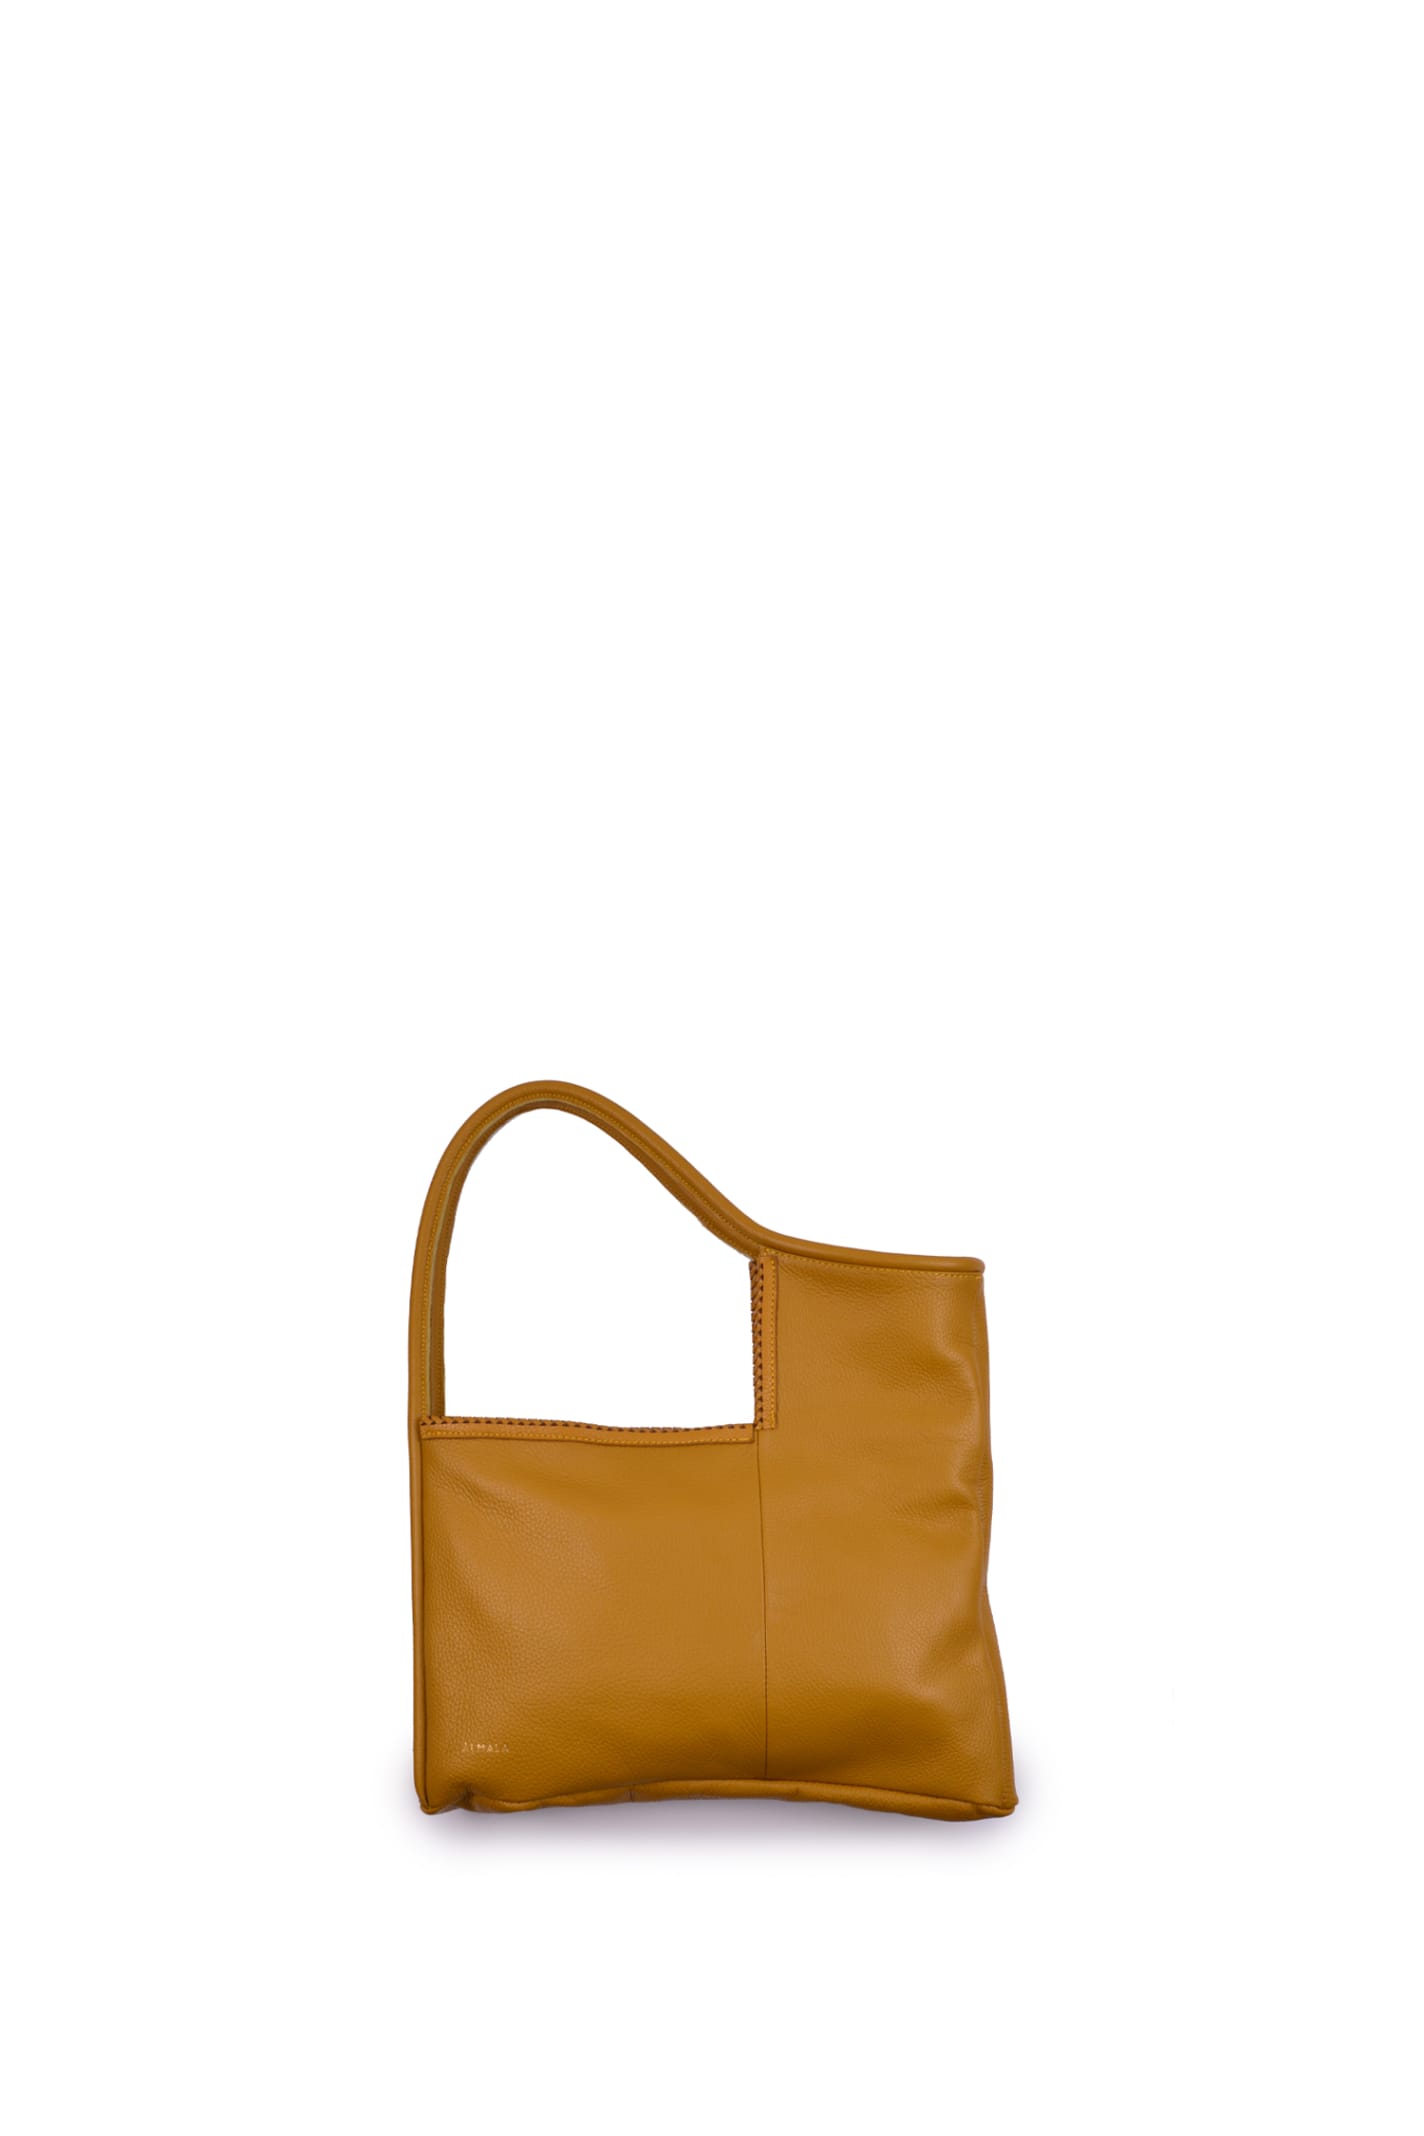 Almala Ophelia Leather Bag